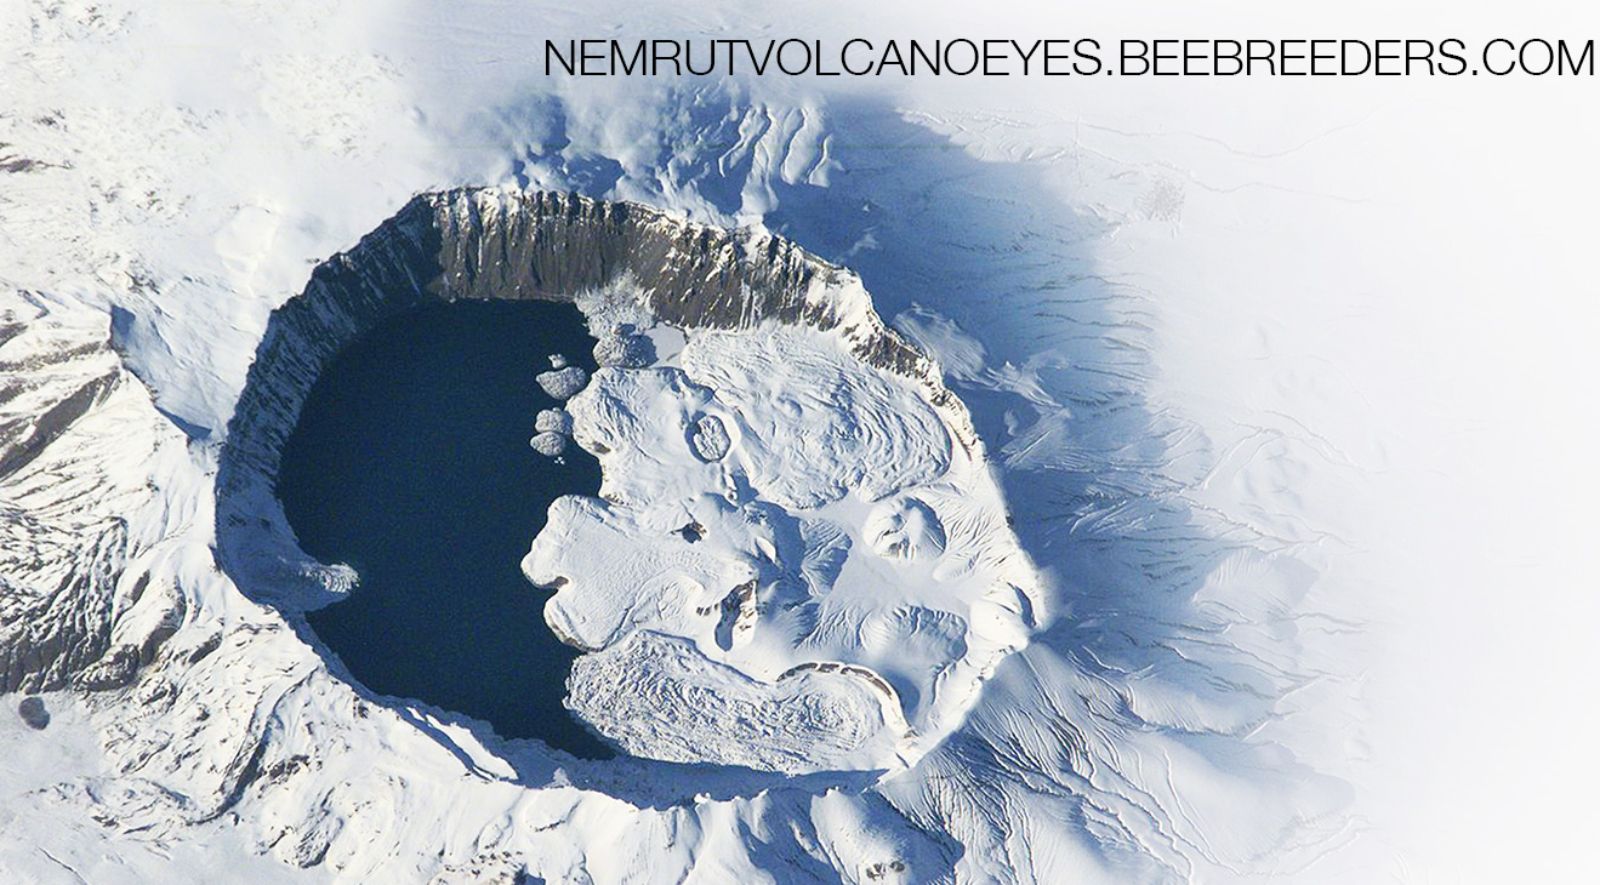 Nemrut Volcano Eyes